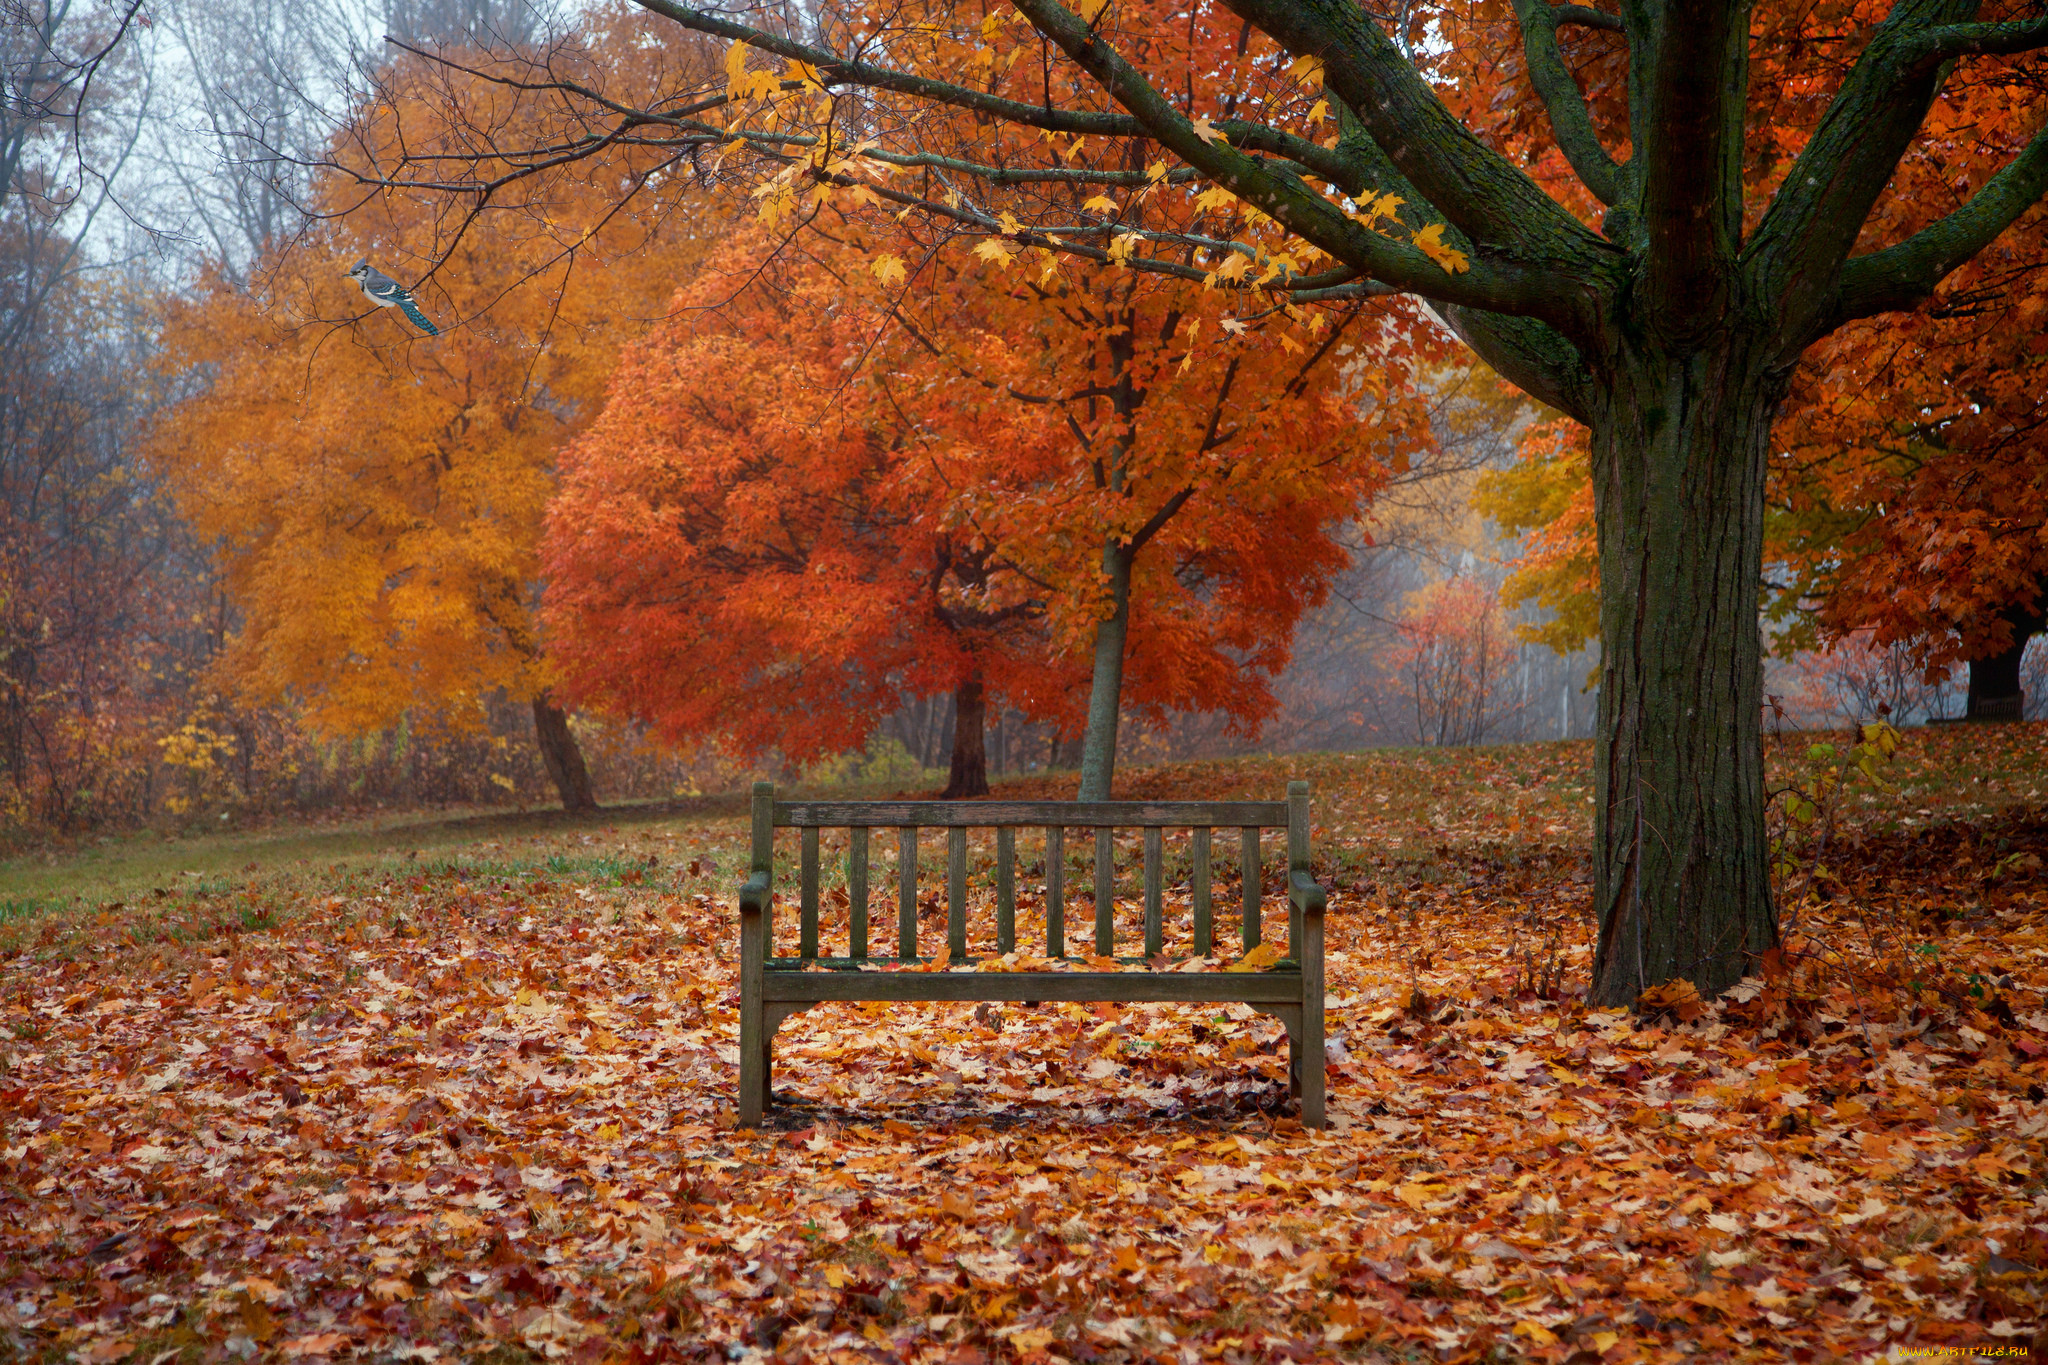 Fall scenes. Осенний парк. Осень в парке. Осенний парк с лавочкой. Осенний парк скамейка.